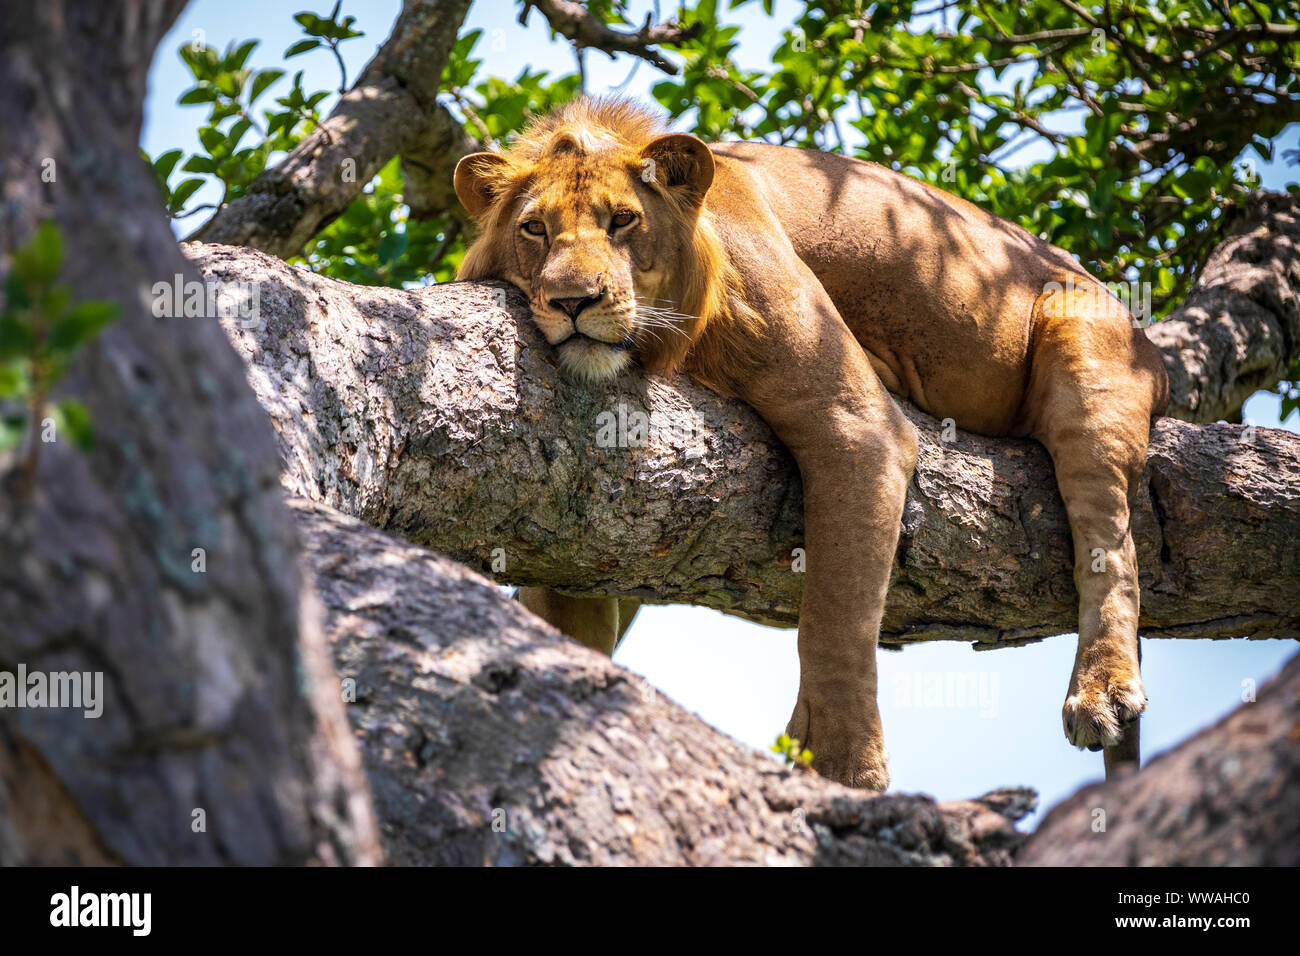 Portrait de lion (Panthera leo) reposant sur branche d'arbre, Parc national Queen Elizabeth, en Ouganda Banque D'Images